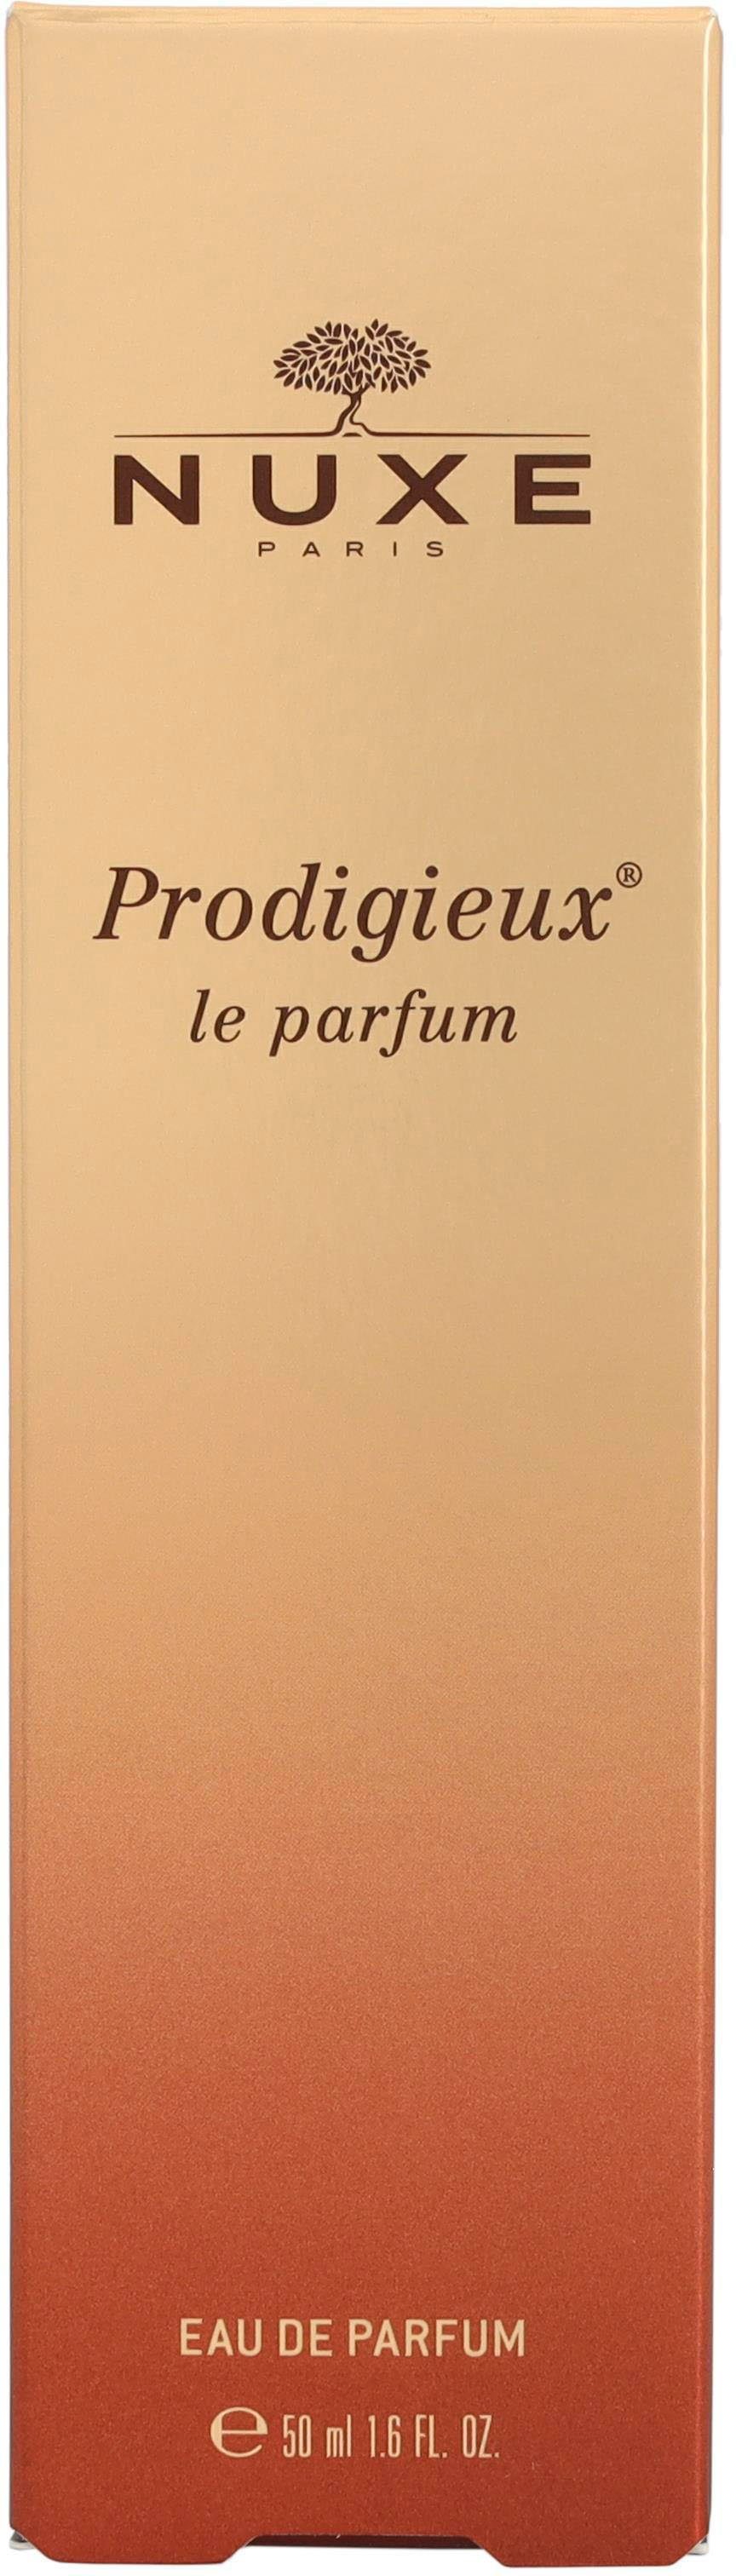 Prodigieux Nuxe Eau Parfum Parfum de Le